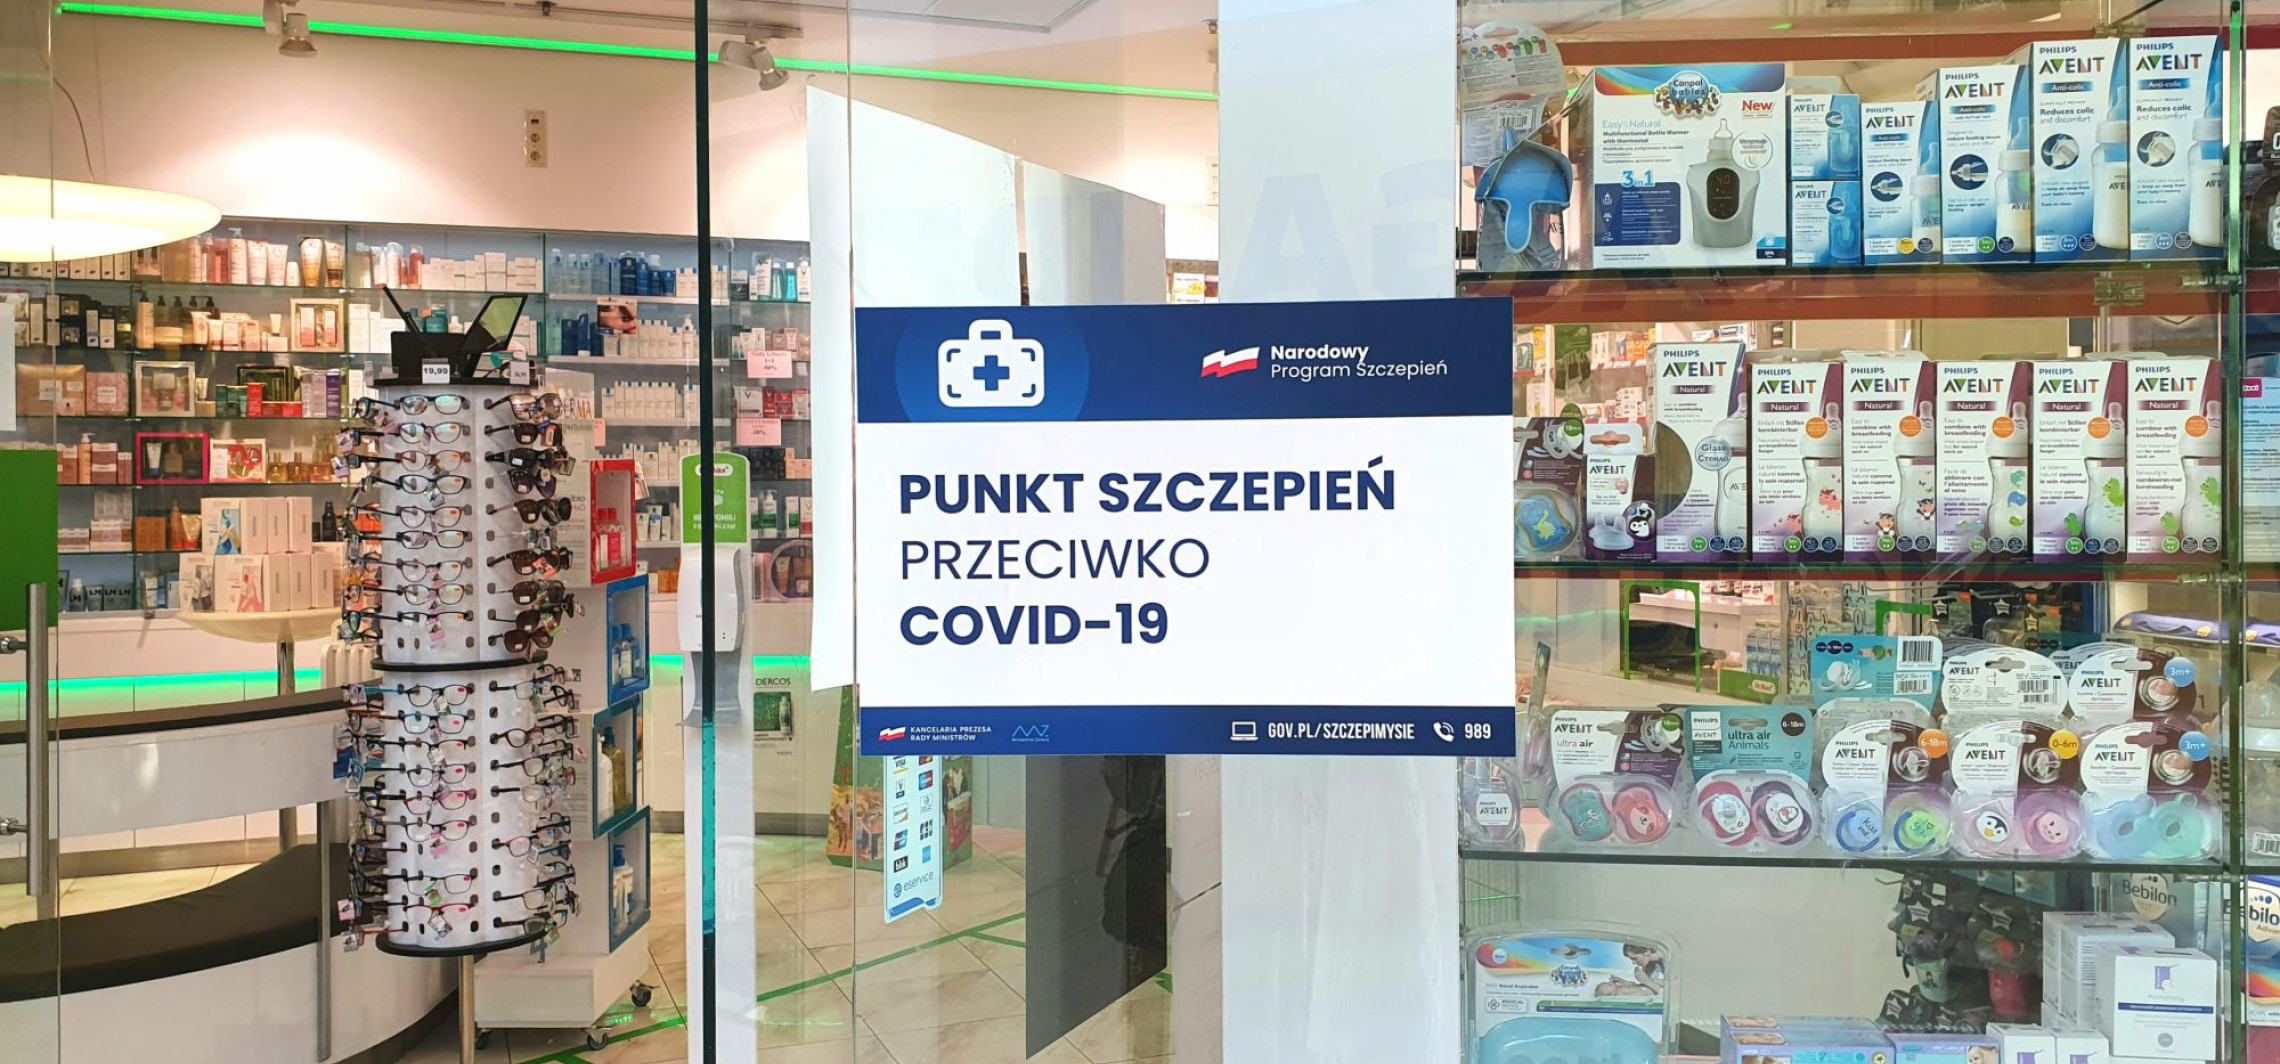 Inowrocław - W galerii handlowej możesz się zaszczepić